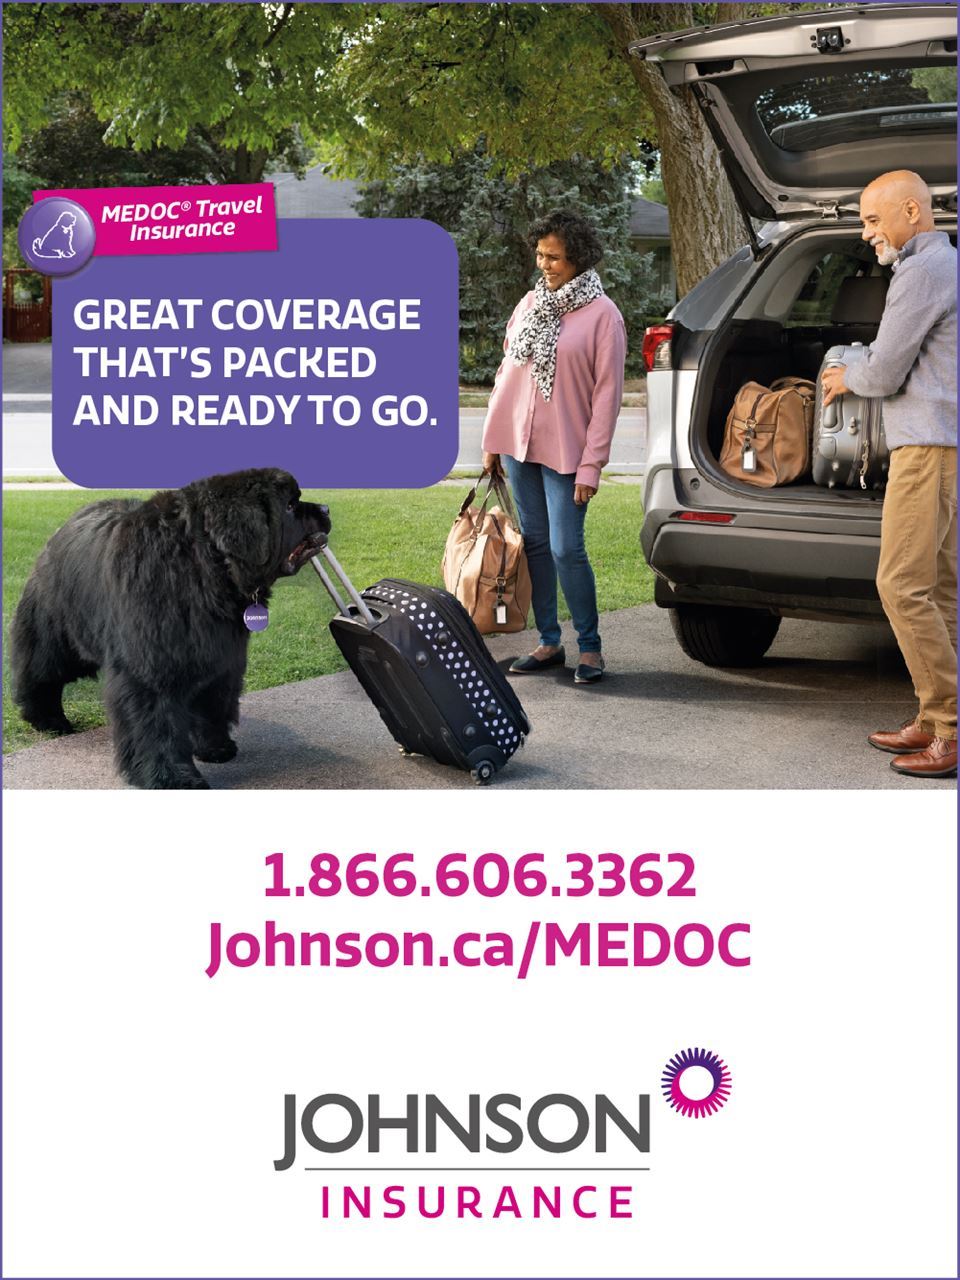 Johnson Insurance Advertisement for Medical Insurance